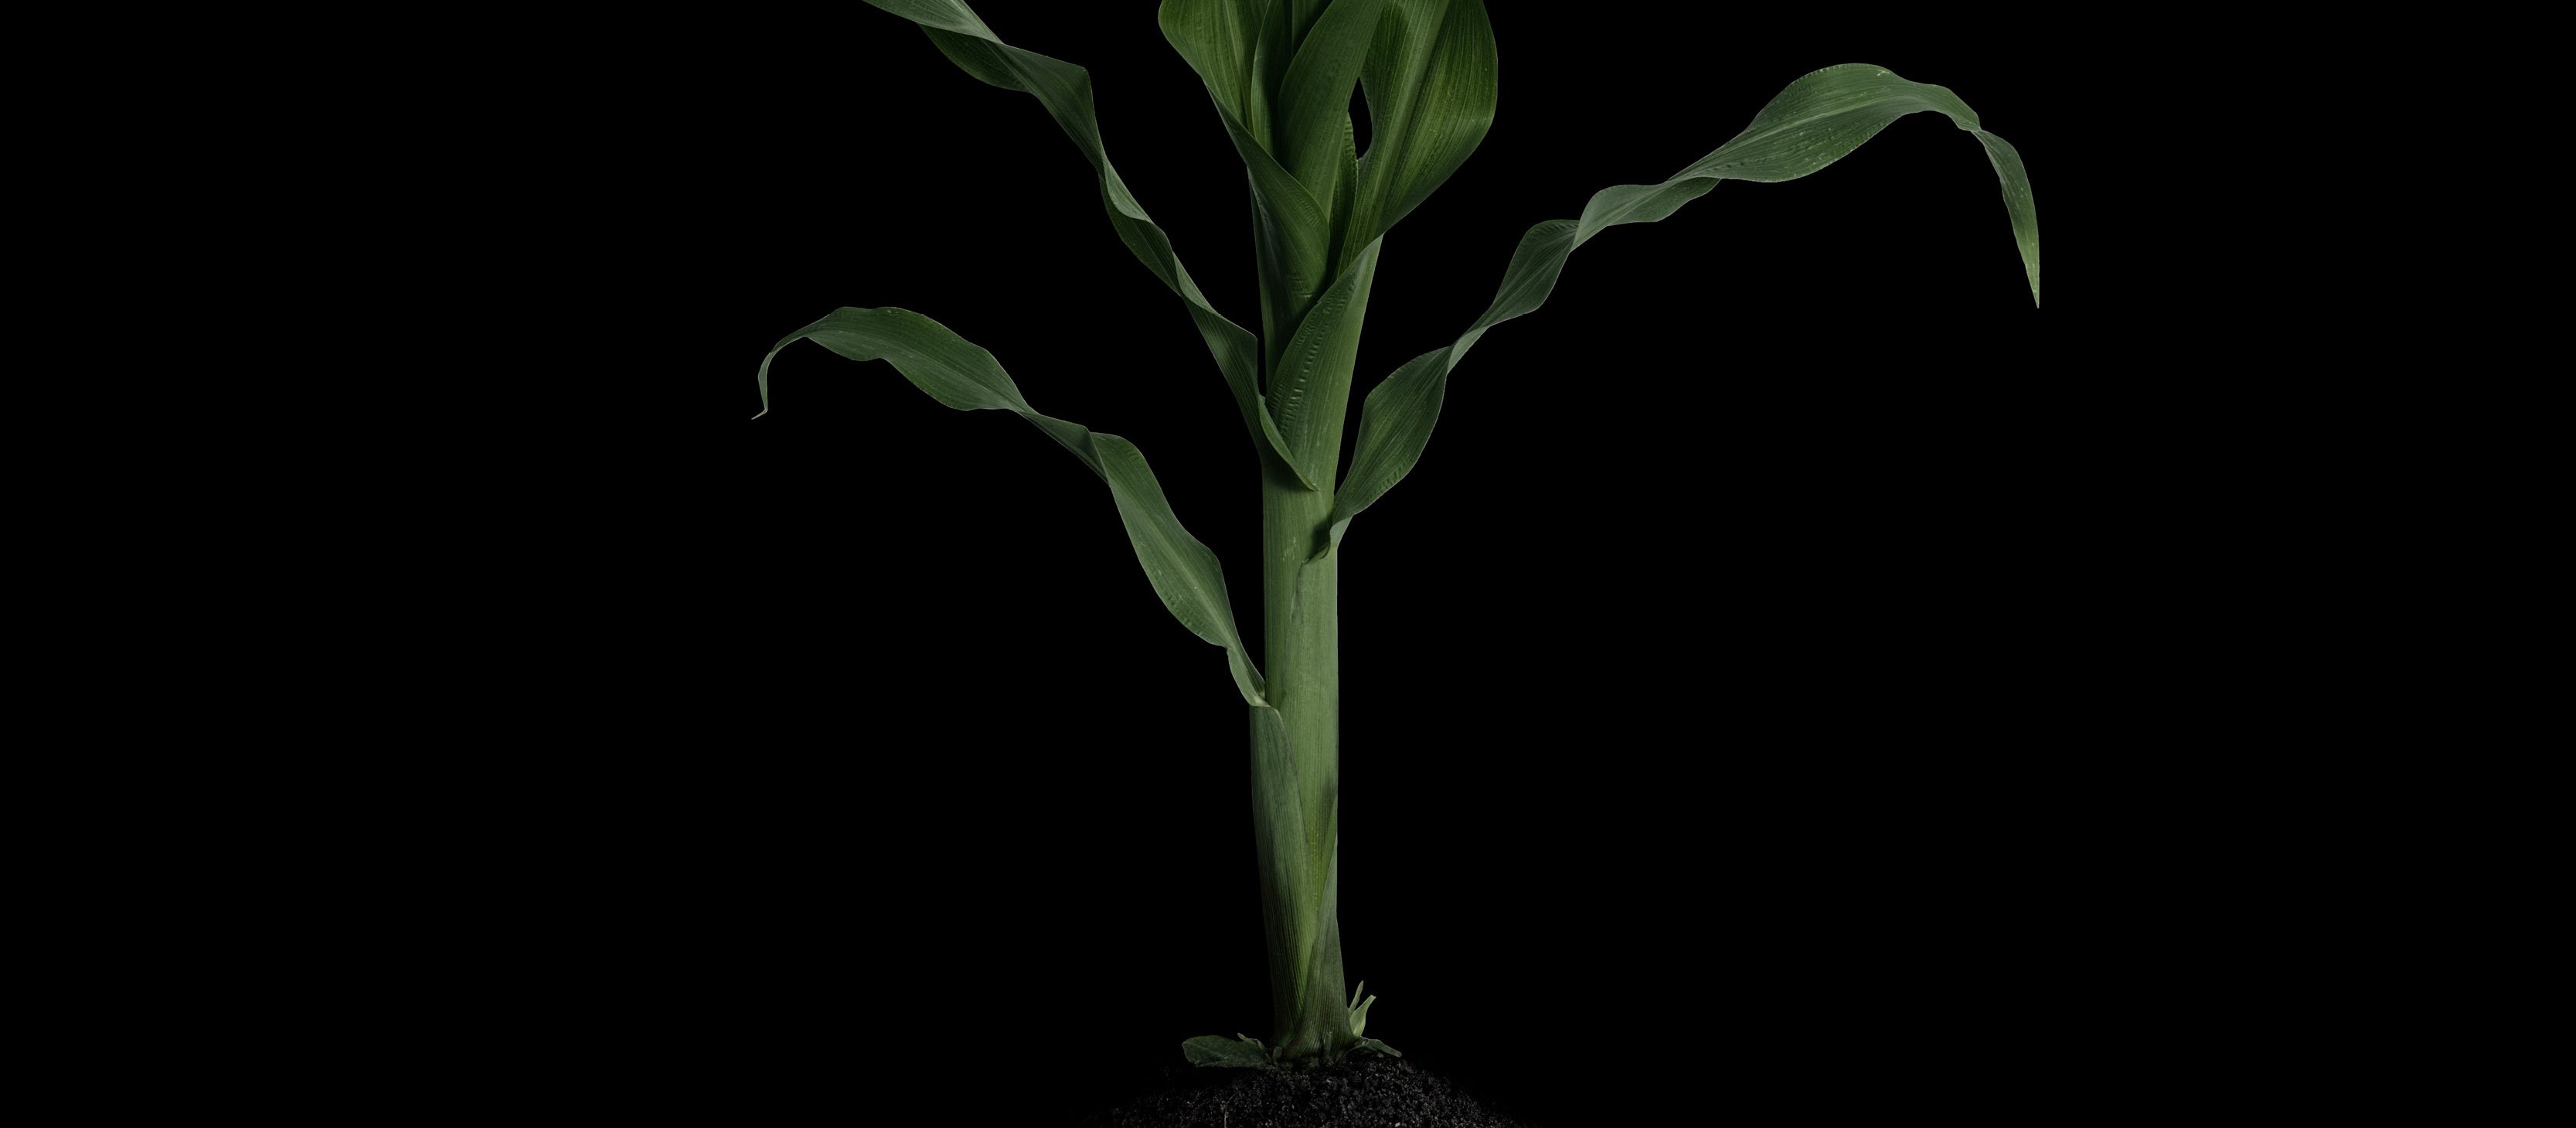 Zaļš augs, kas simbolizē ilgtspējību